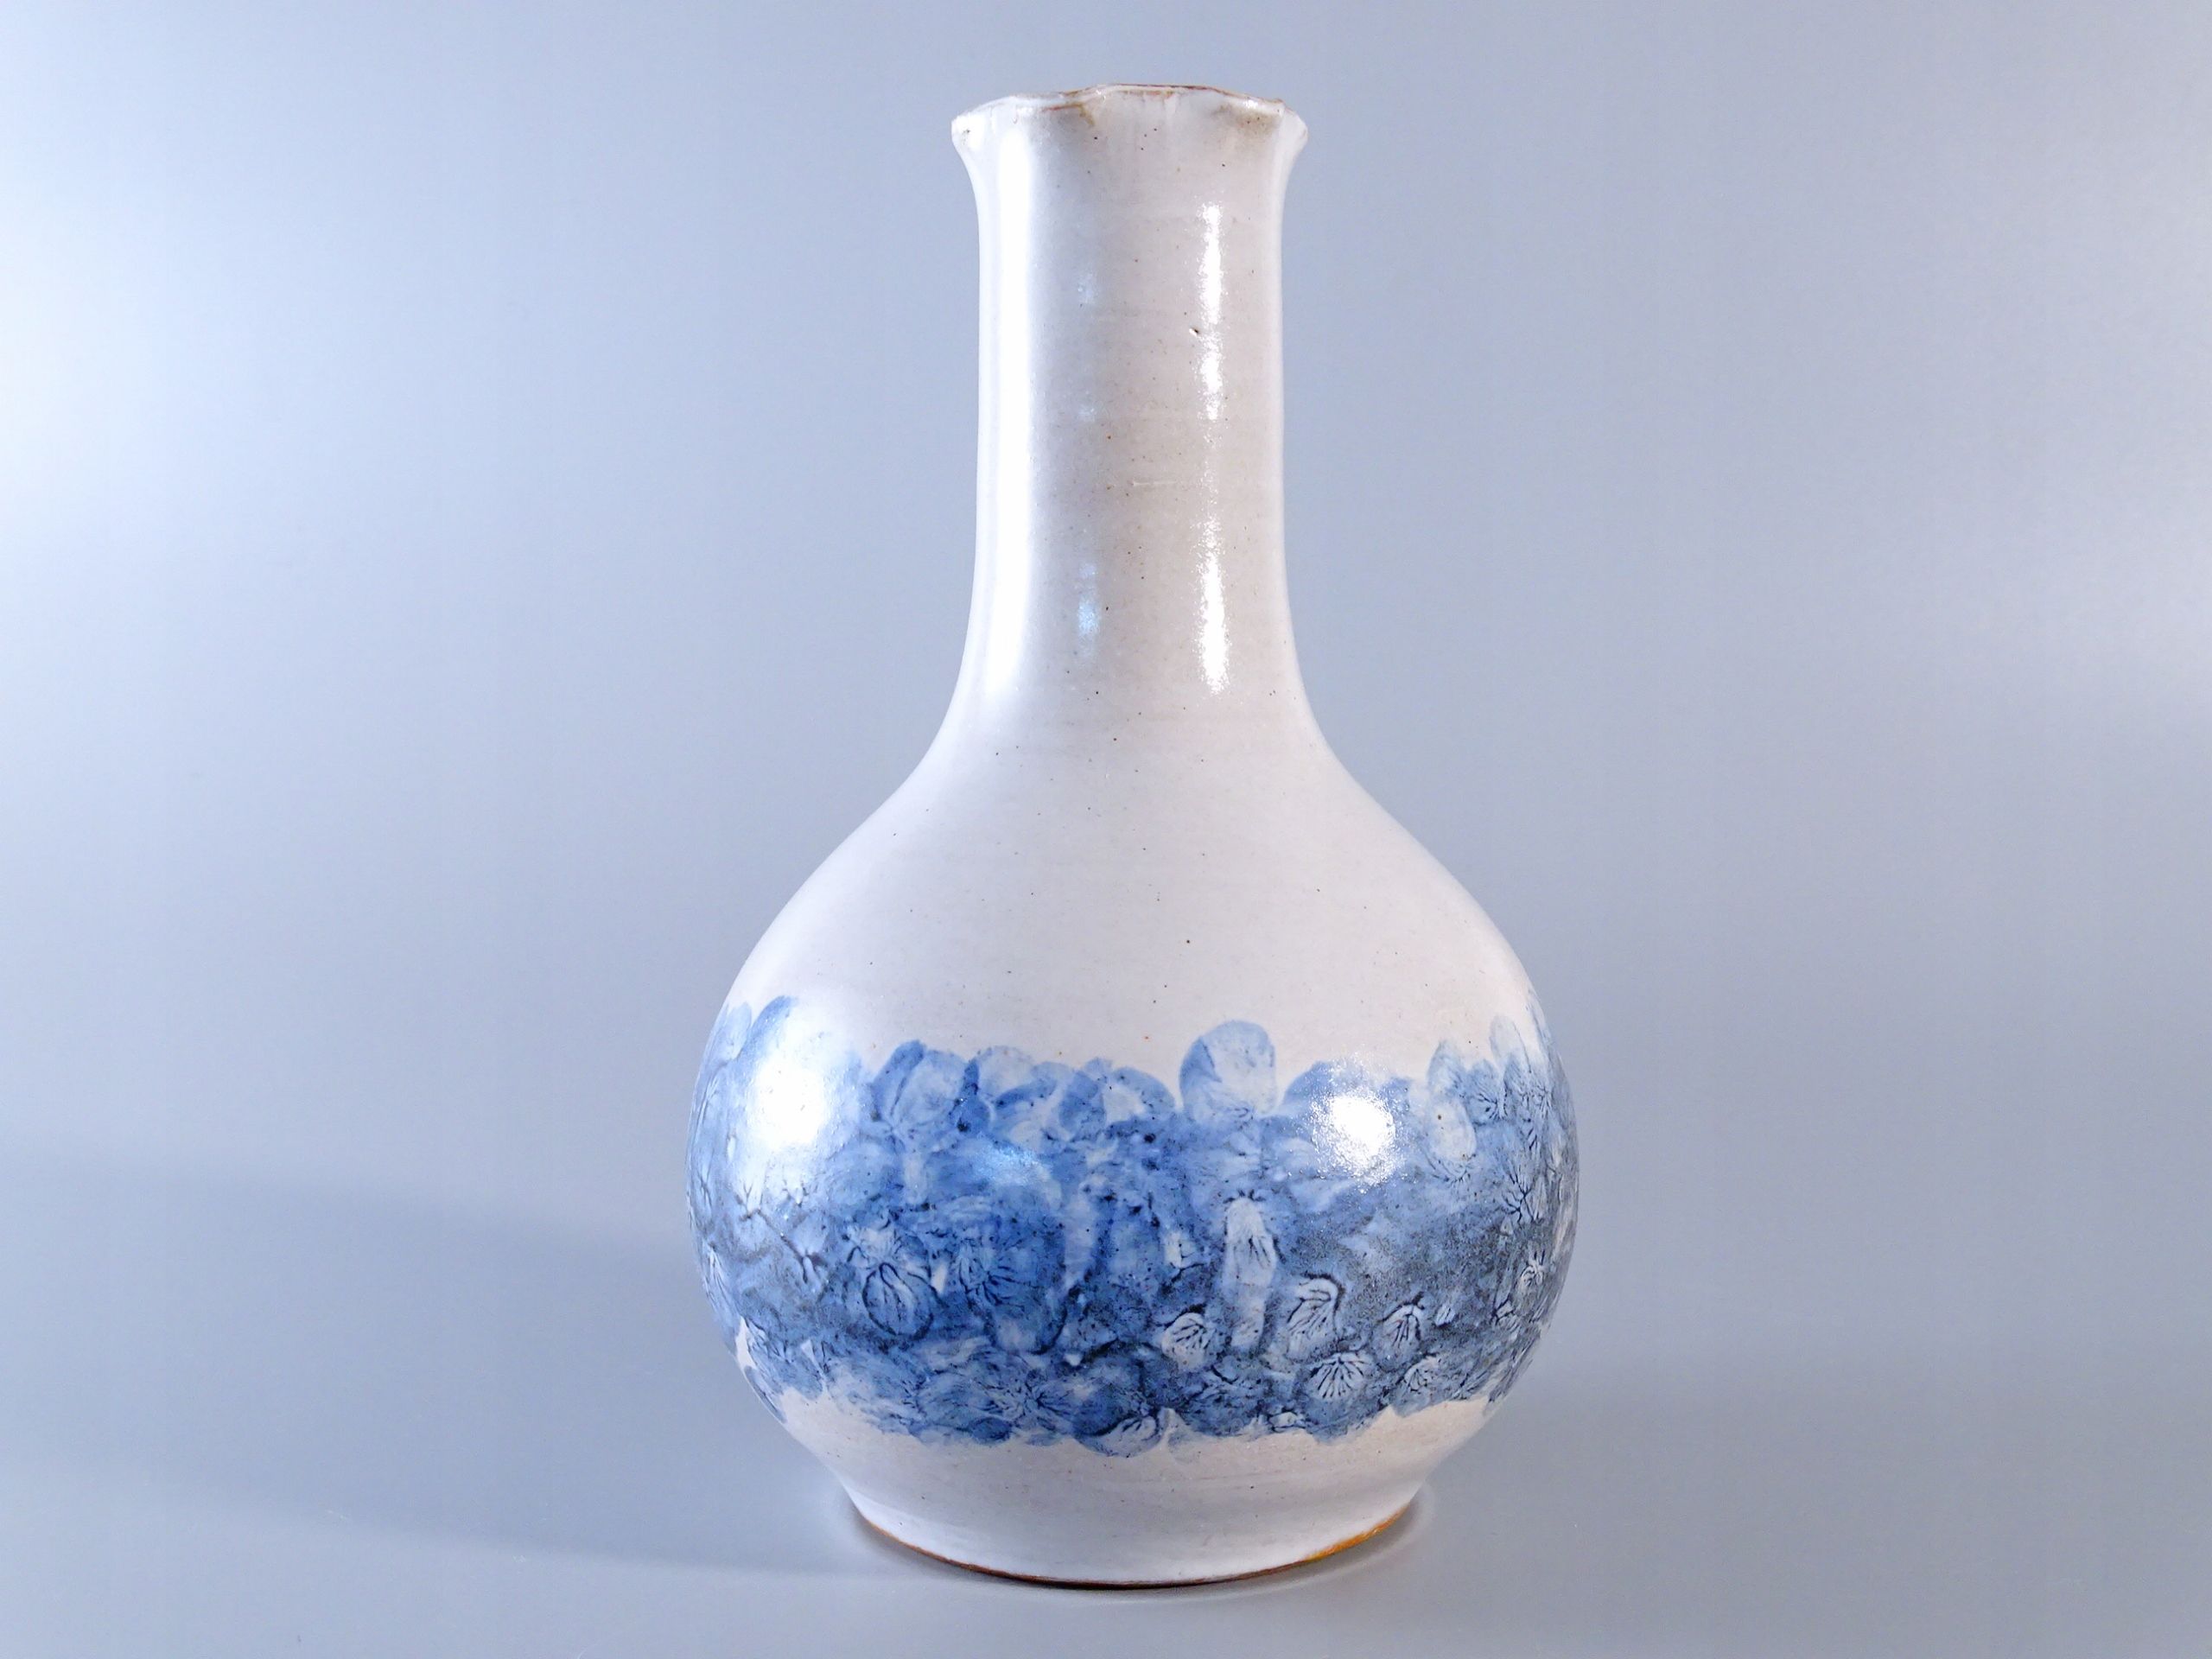 erhard goschala sygnowany autorsk ceramiczny wazon